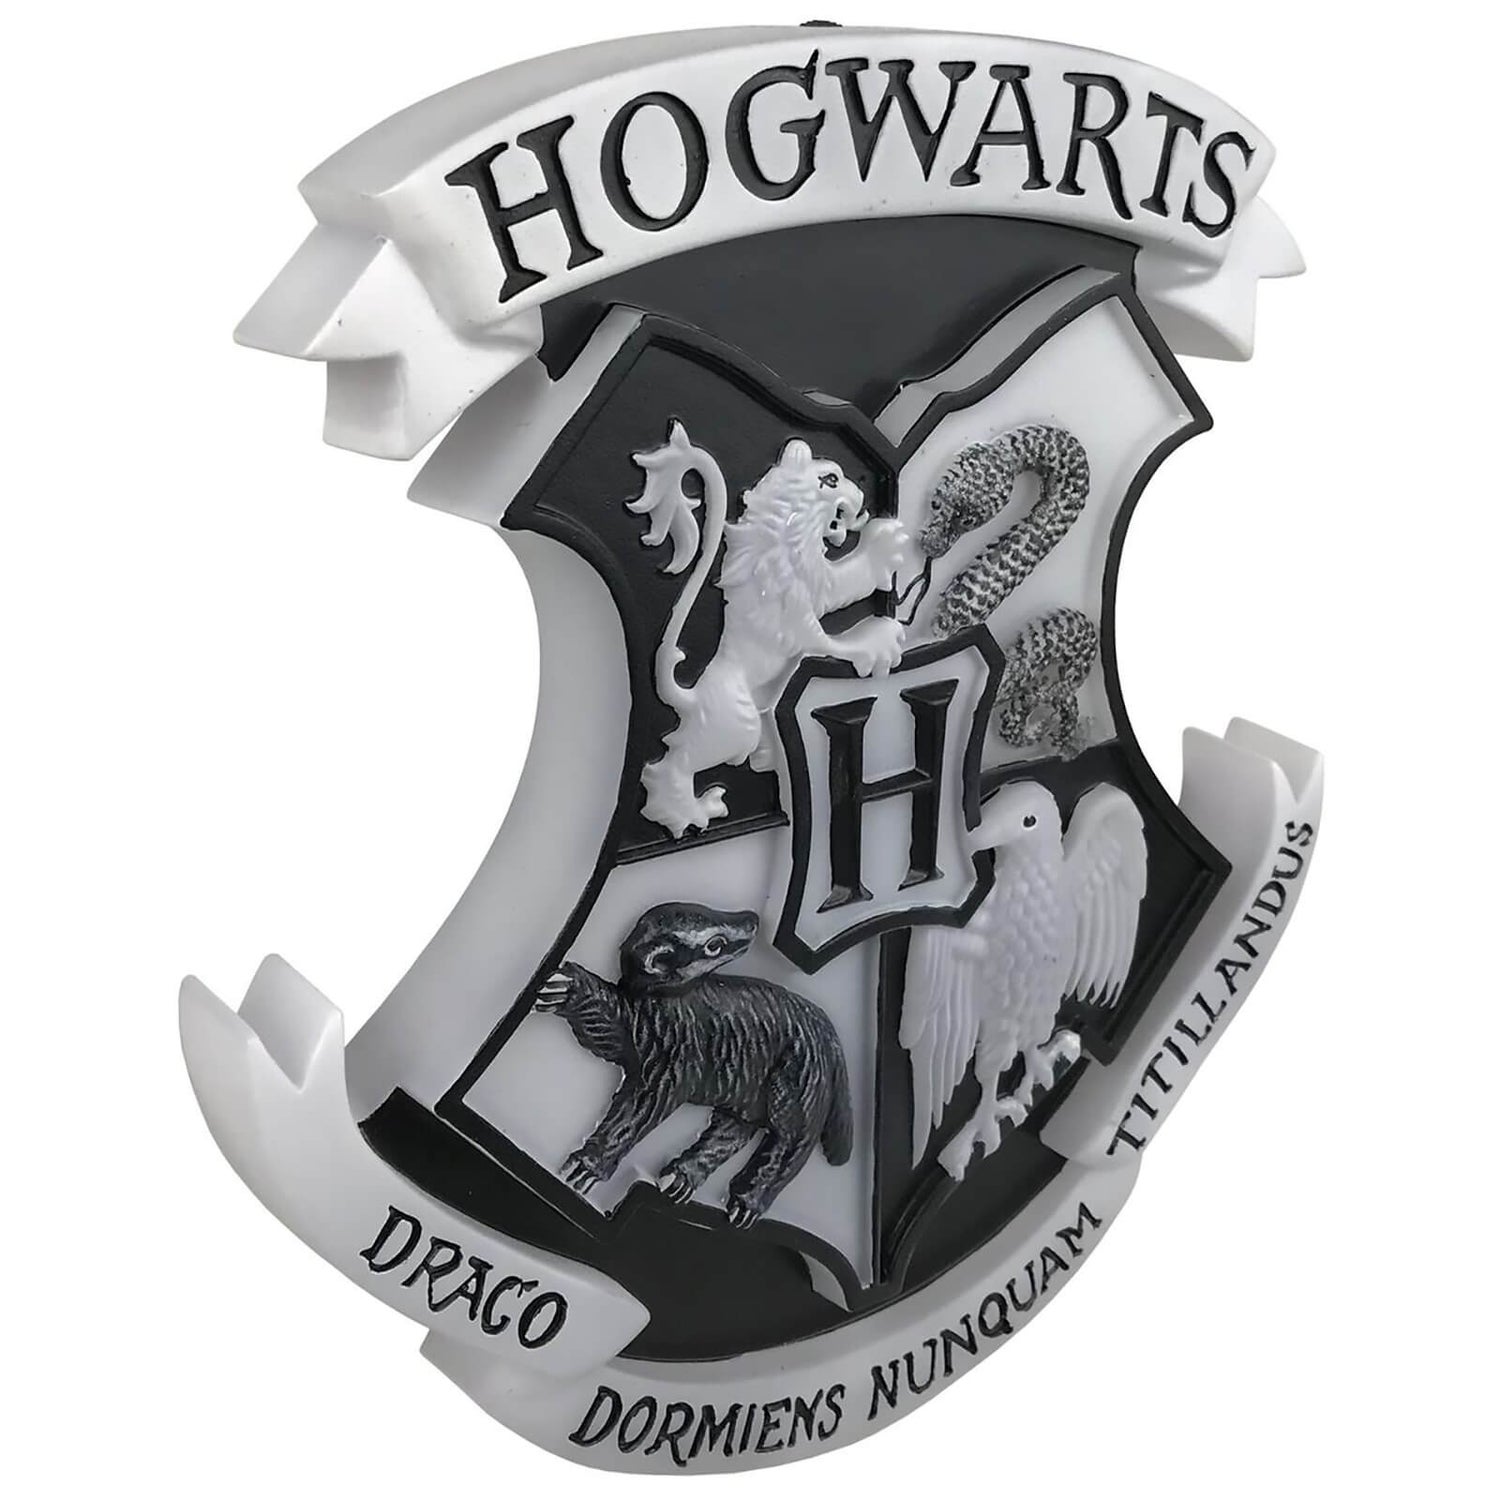 Traditional Tisch Wand/ Gifts Potter Stimmungslicht Hogwarts-Wappen Harry